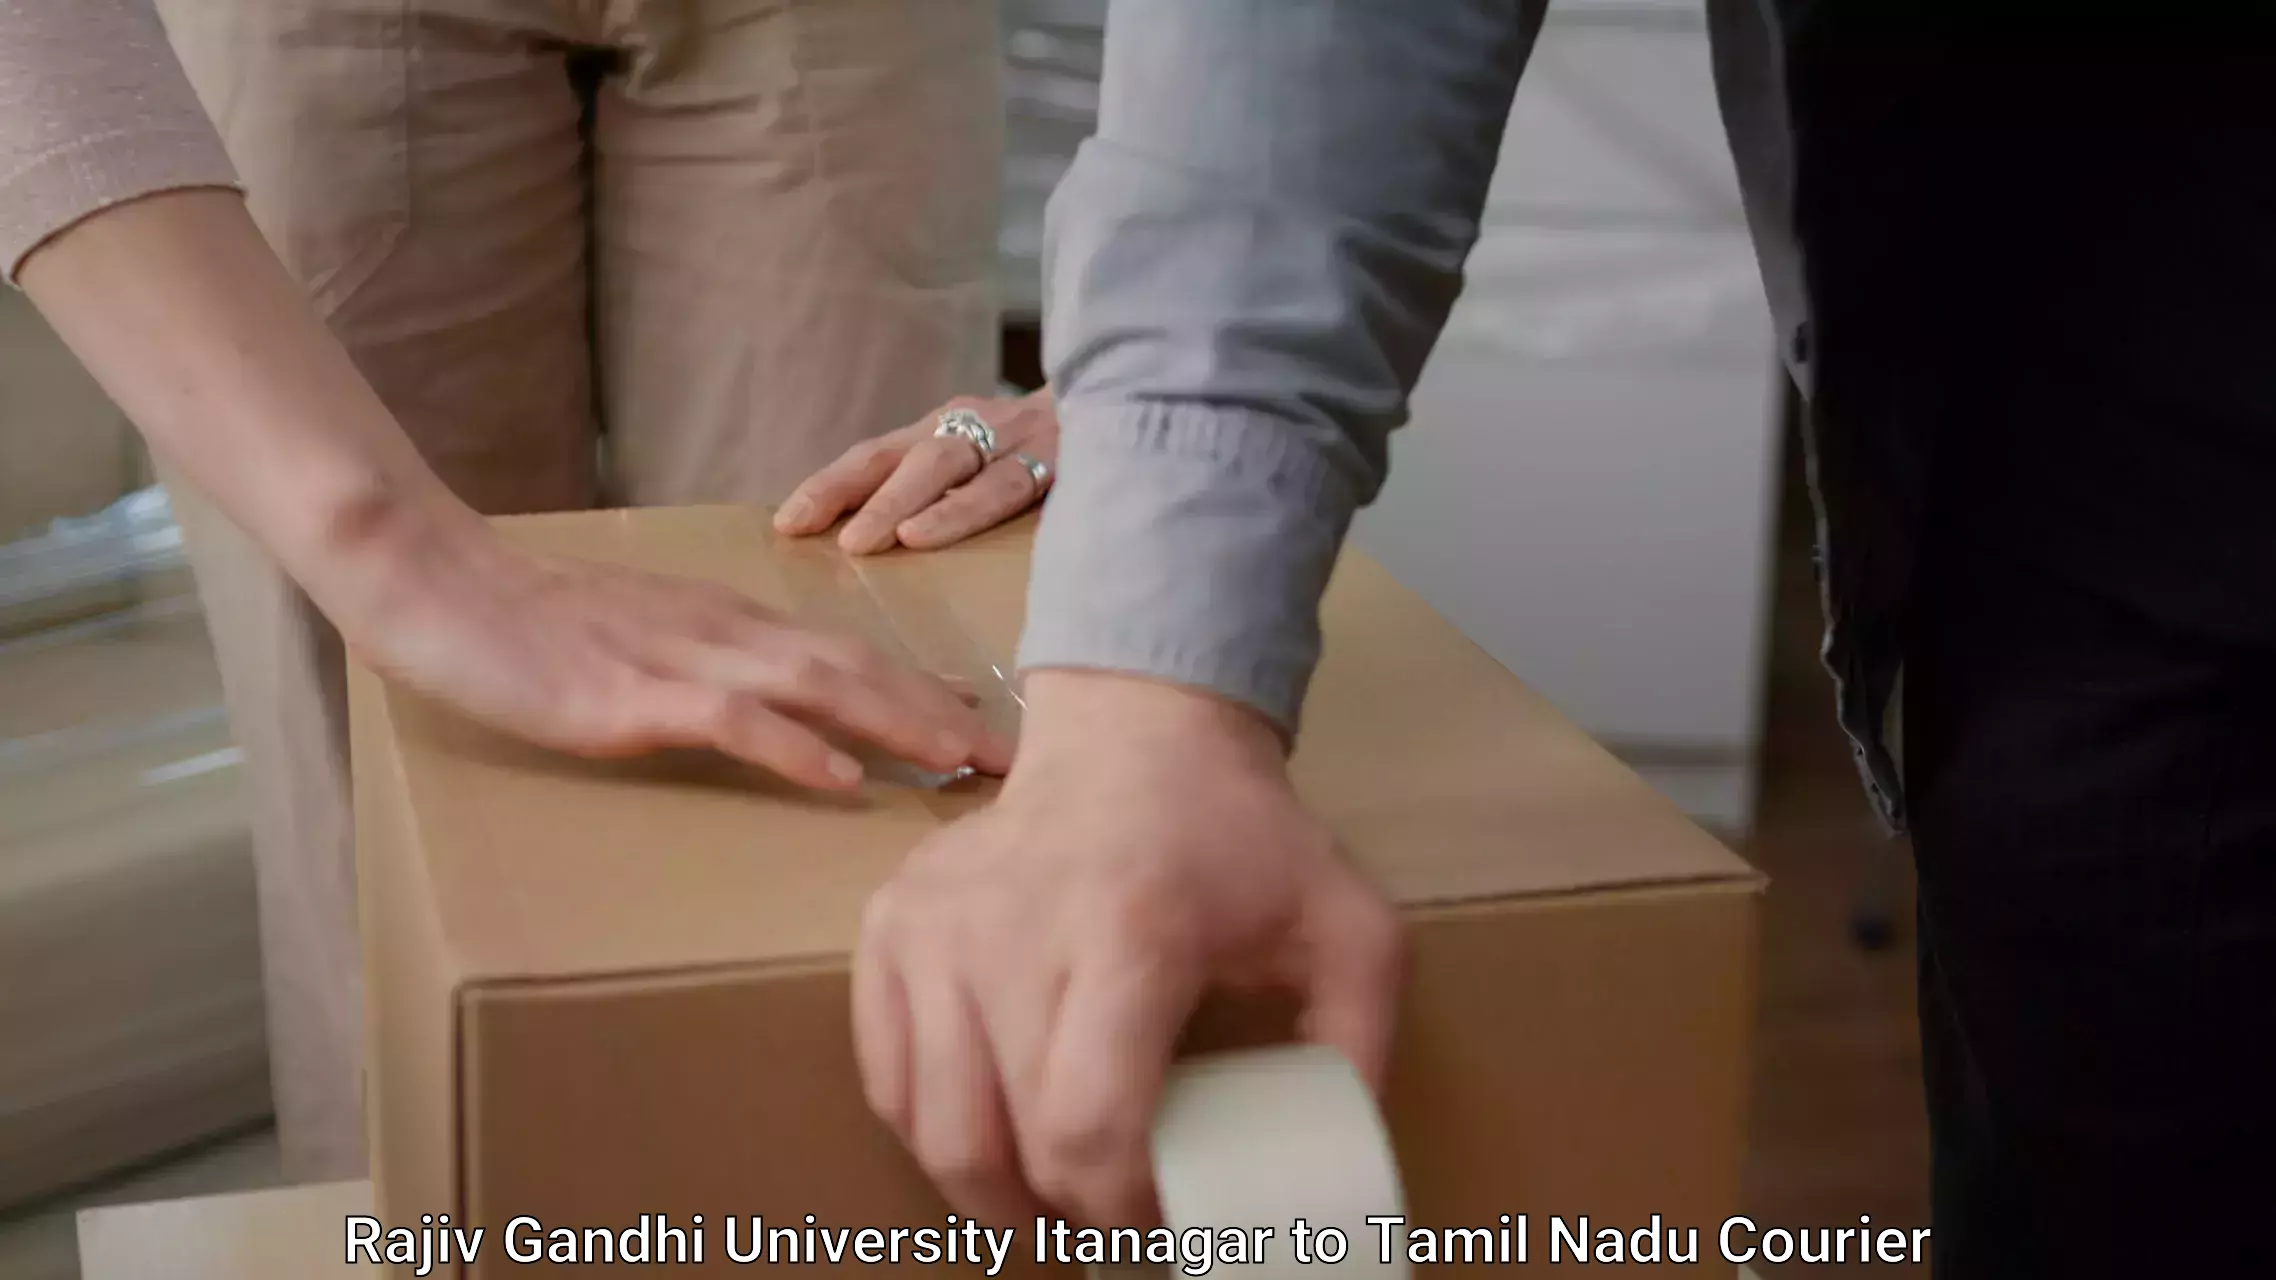 Furniture delivery service in Rajiv Gandhi University Itanagar to Karur